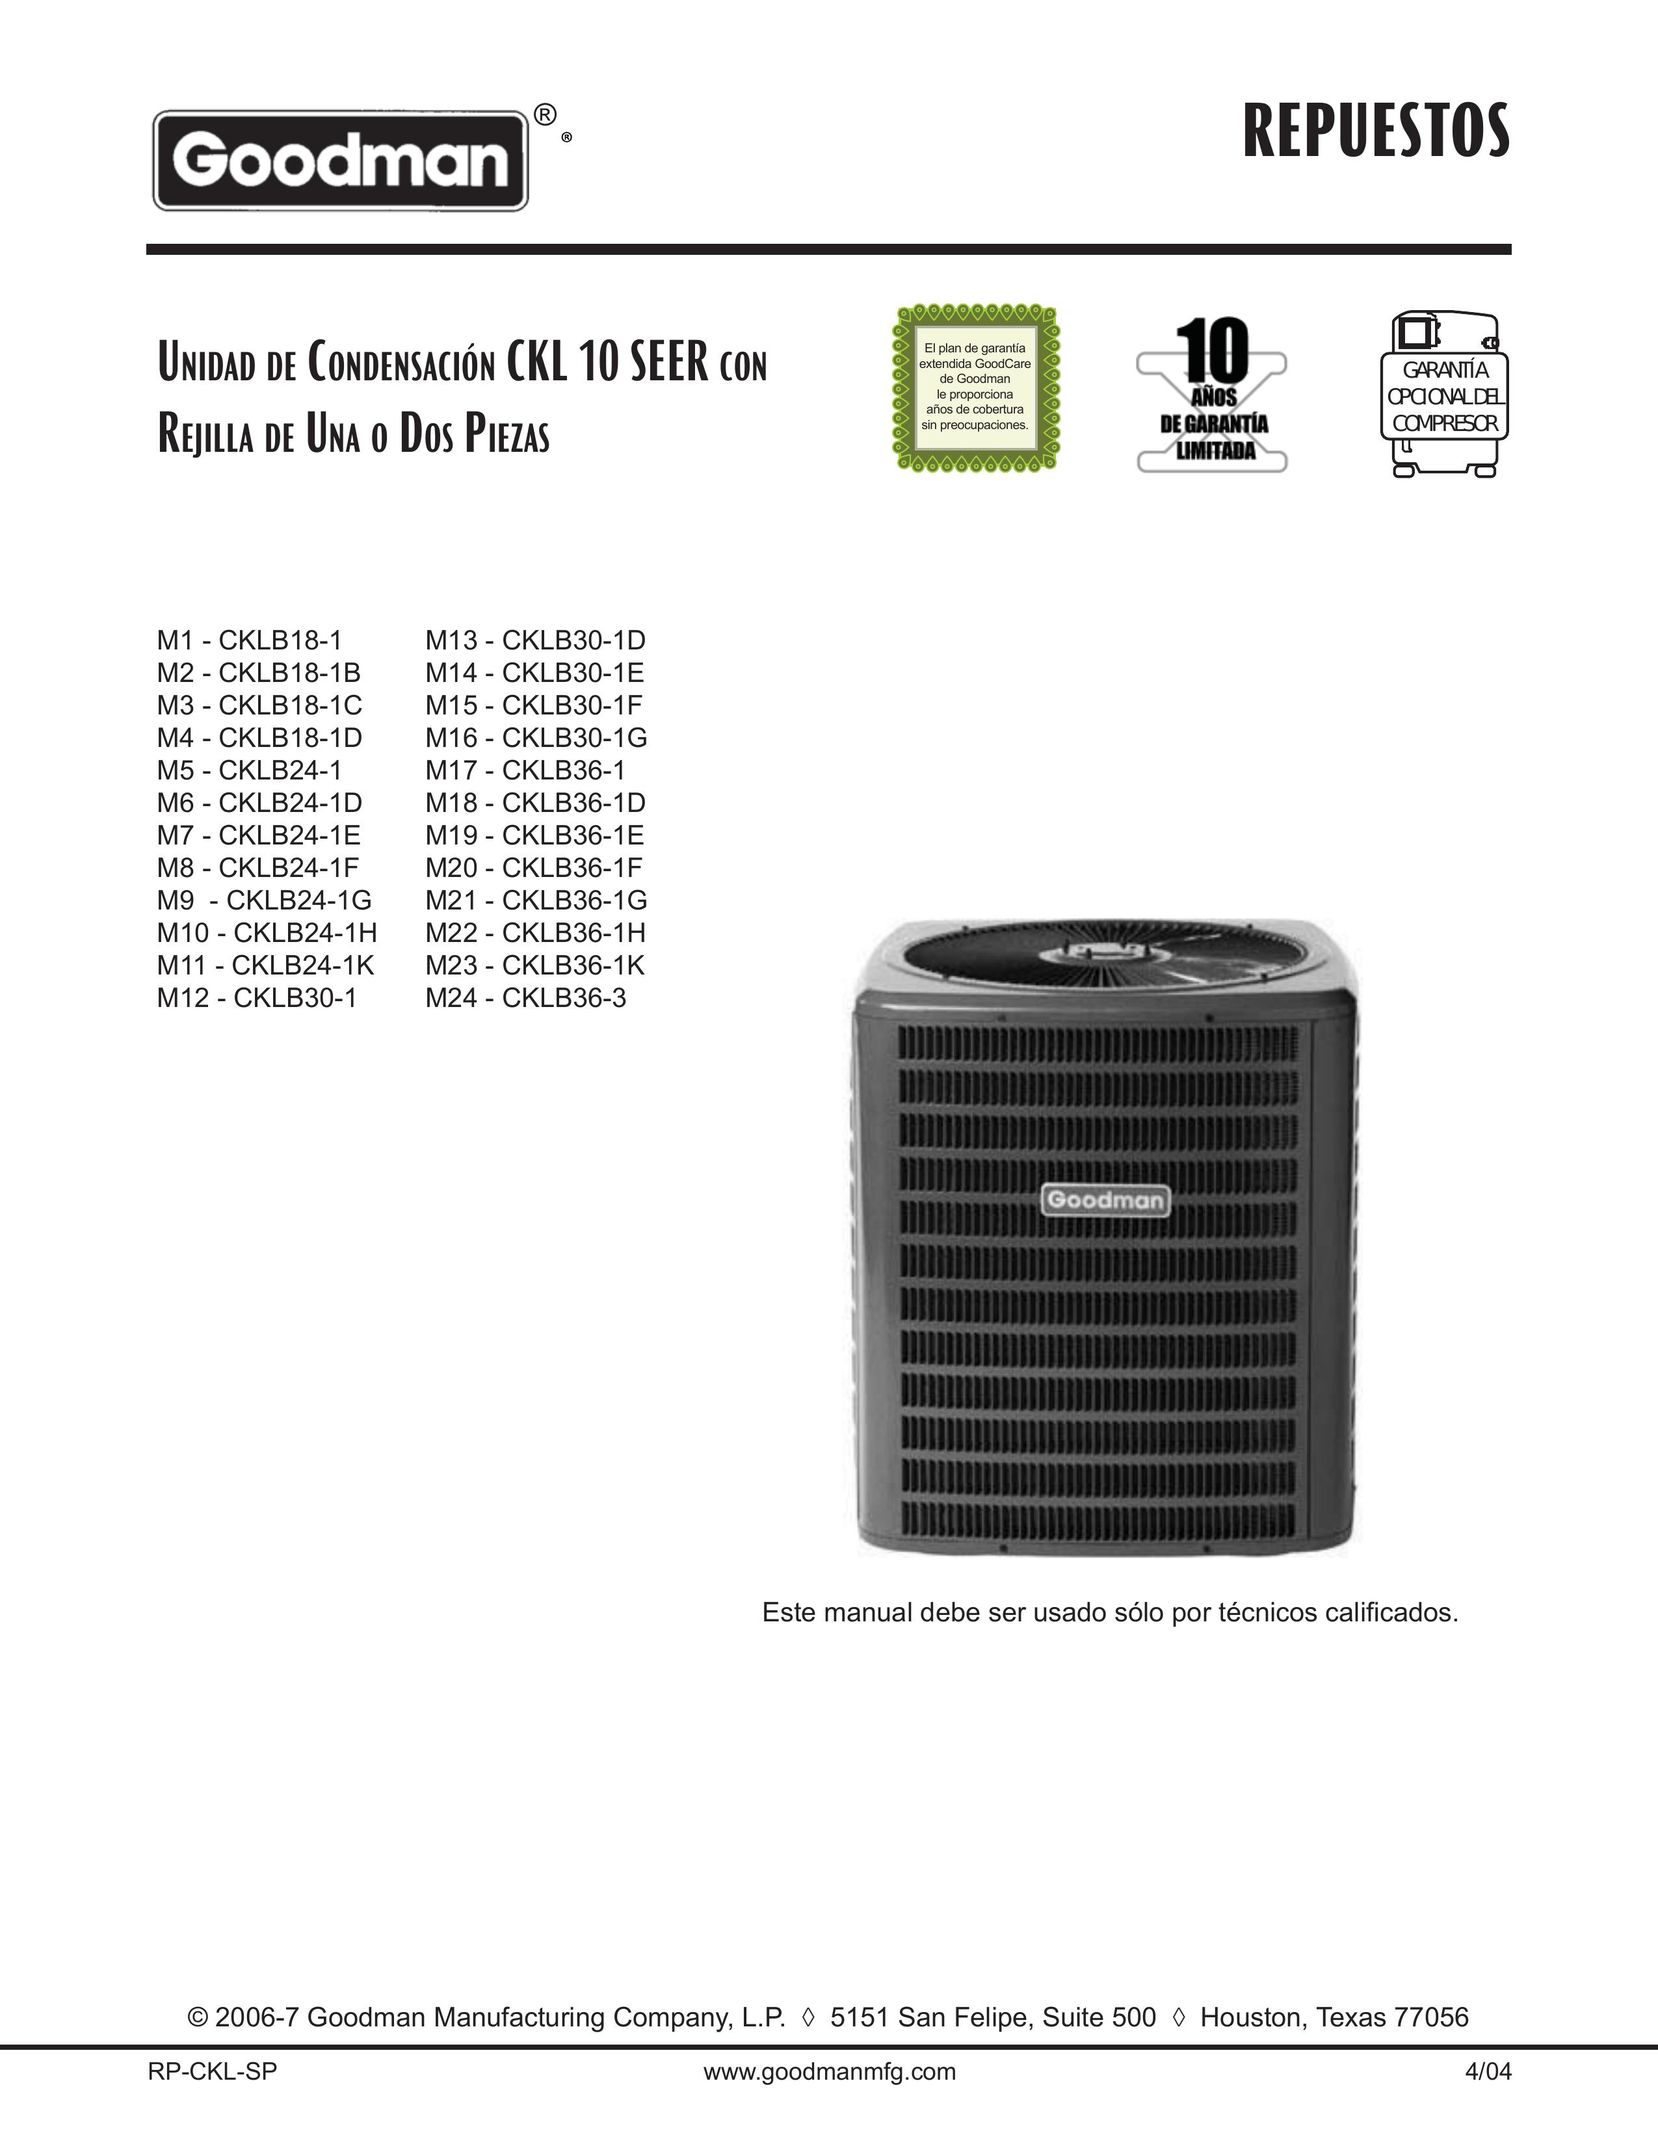 Goodman Mfg CKLB18-1D Air Conditioner User Manual